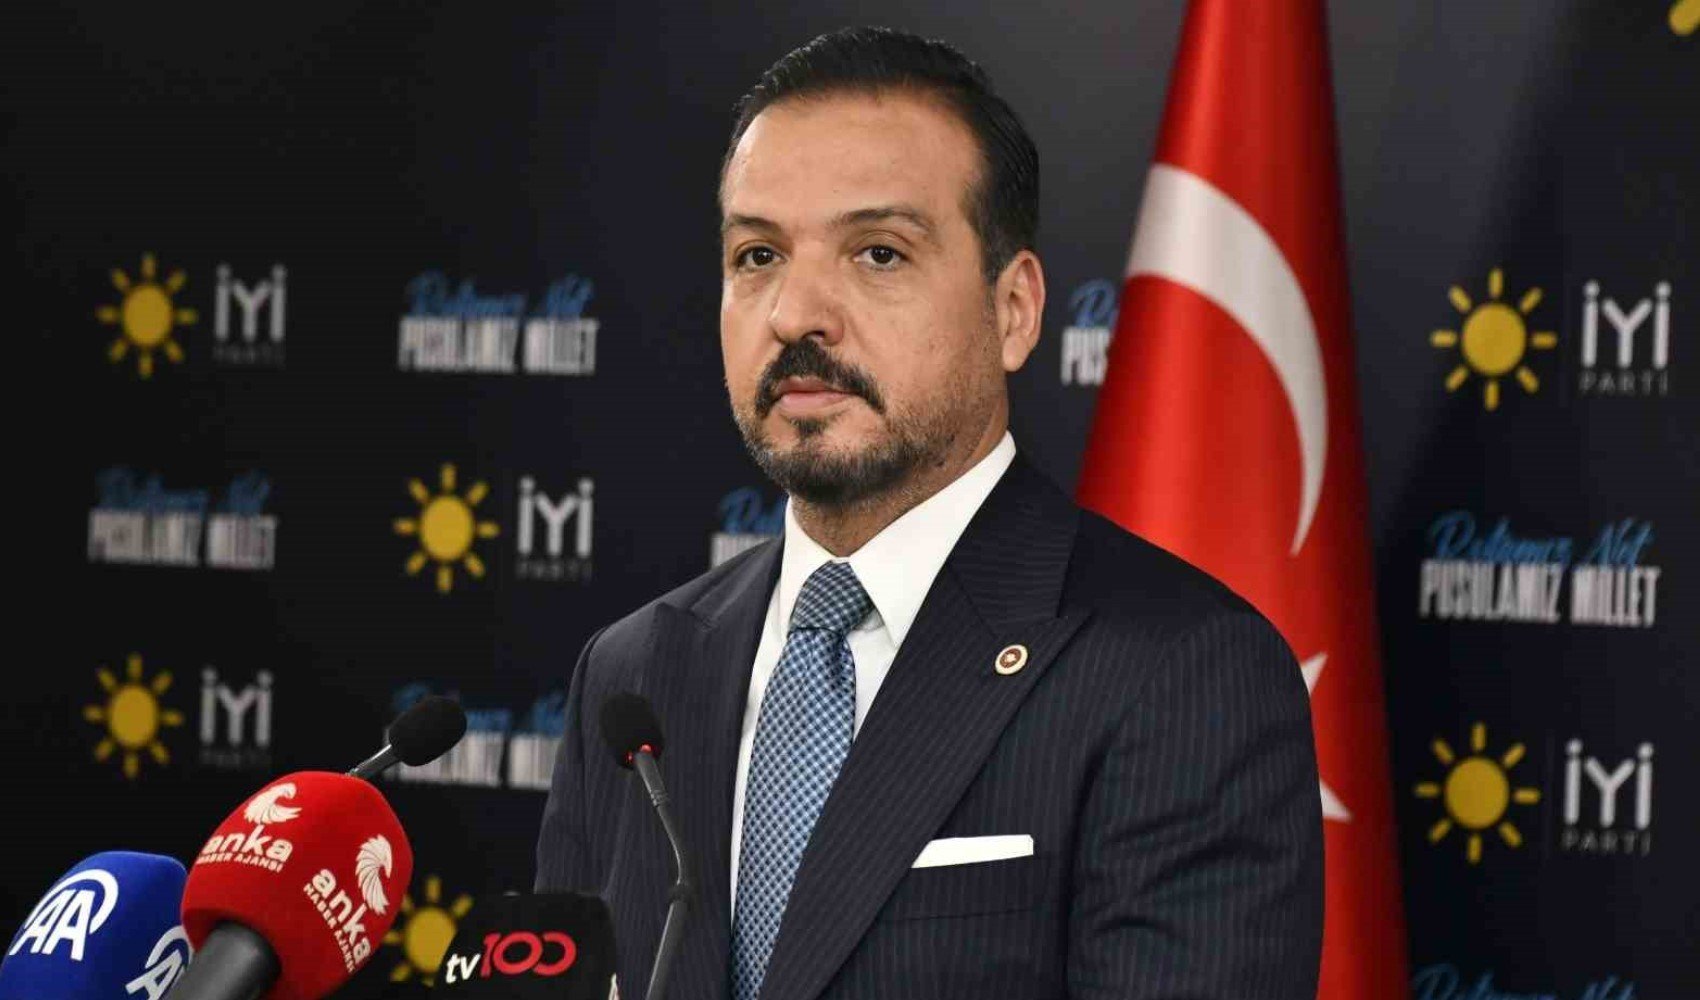 İyi Parti sözcüsü Kürşat Zorlu CHP'ye geçeceği iddialarına yanıt verdi